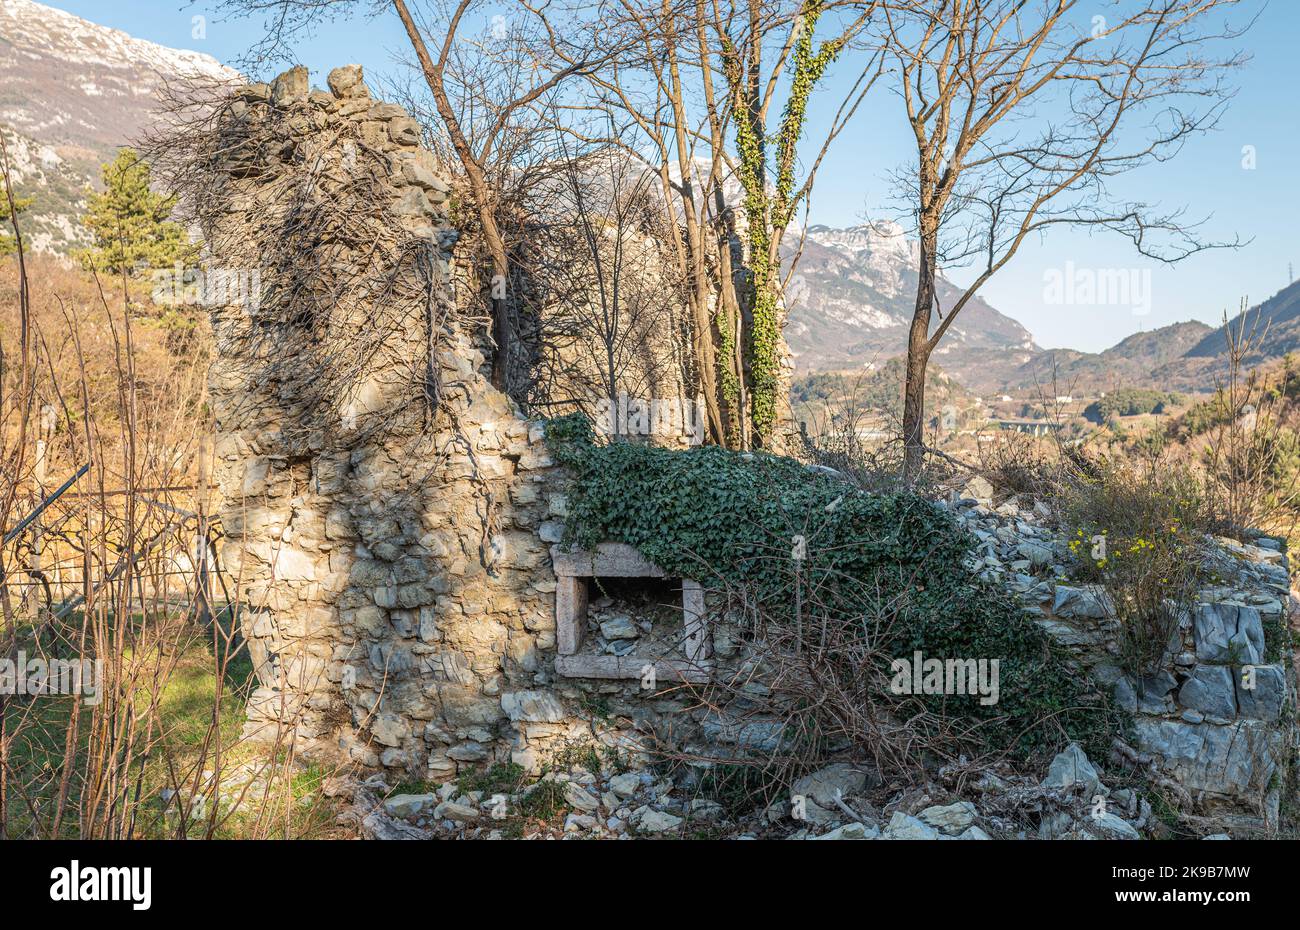 Ruderi di un antico insediamento medievale lungo il sentiero naturalistico Roggia di Cavedine - provincia di Trento, Trentino Alto Abuge - Italia settentrionale Foto Stock